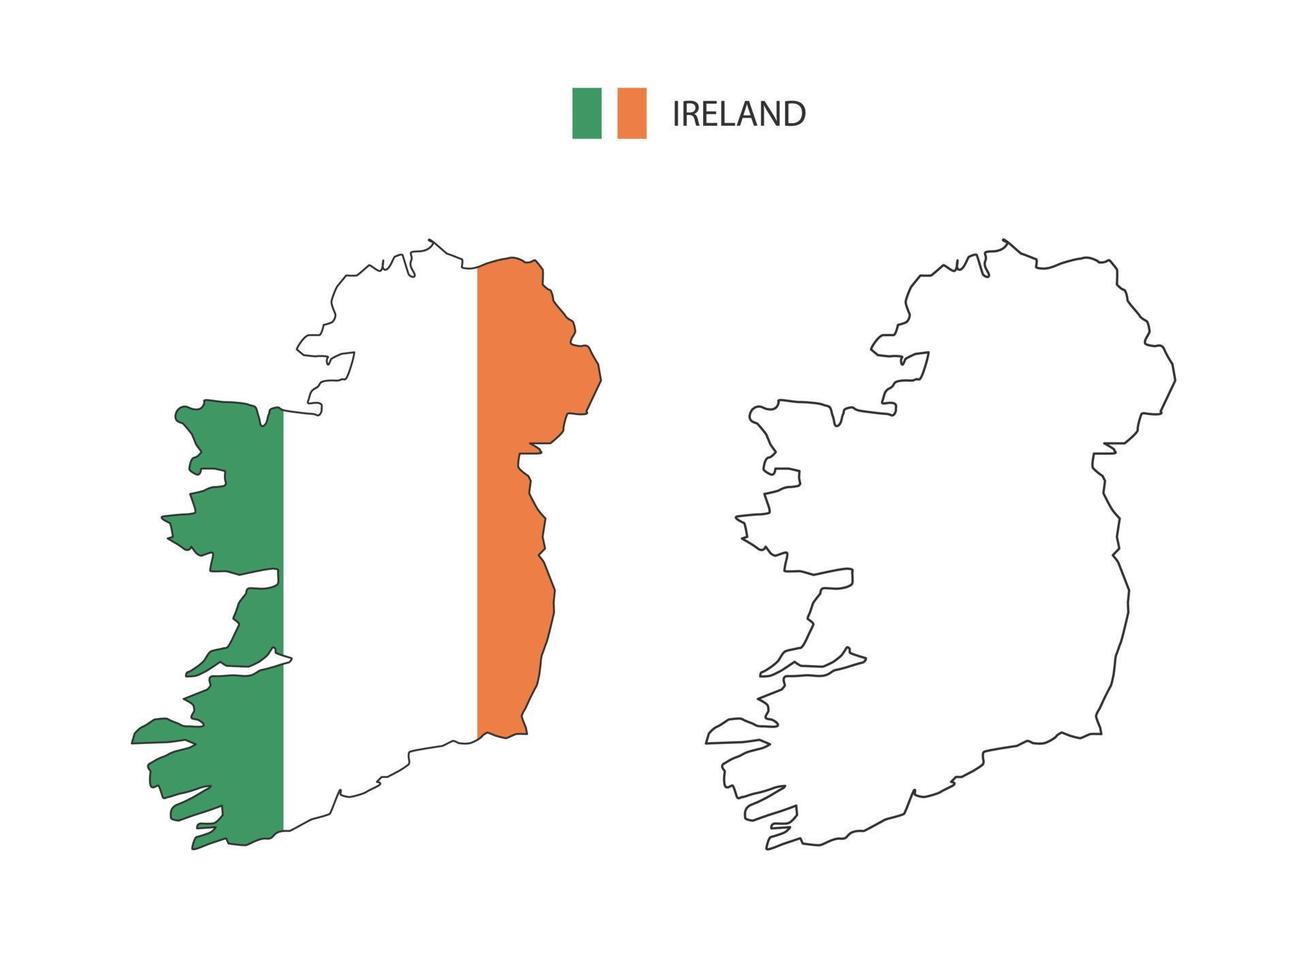 vetor da cidade do mapa da irlanda dividido pelo estilo de simplicidade do contorno. tem 2 versões, versão de linha fina preta e cor da versão da bandeira do país. ambos os mapas estavam no fundo branco.